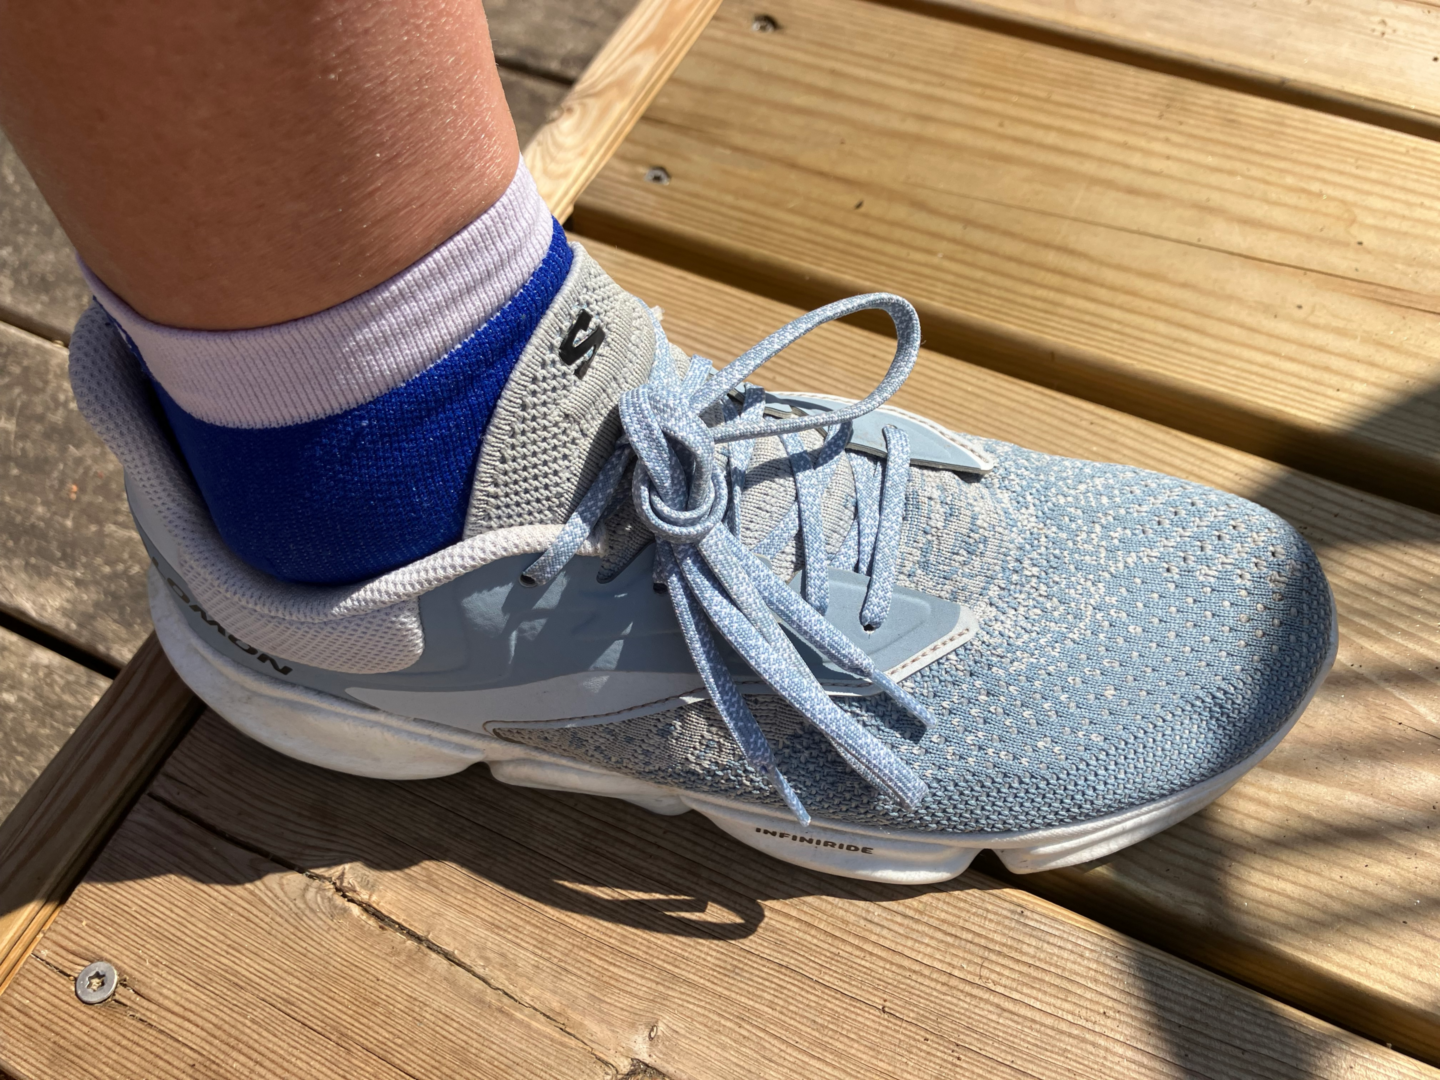 Choisir vos chaussures quand on est coureur, conseils pour une paires de chaussures de running, chaussure running la plus legere, comment choisir ses baskets de running